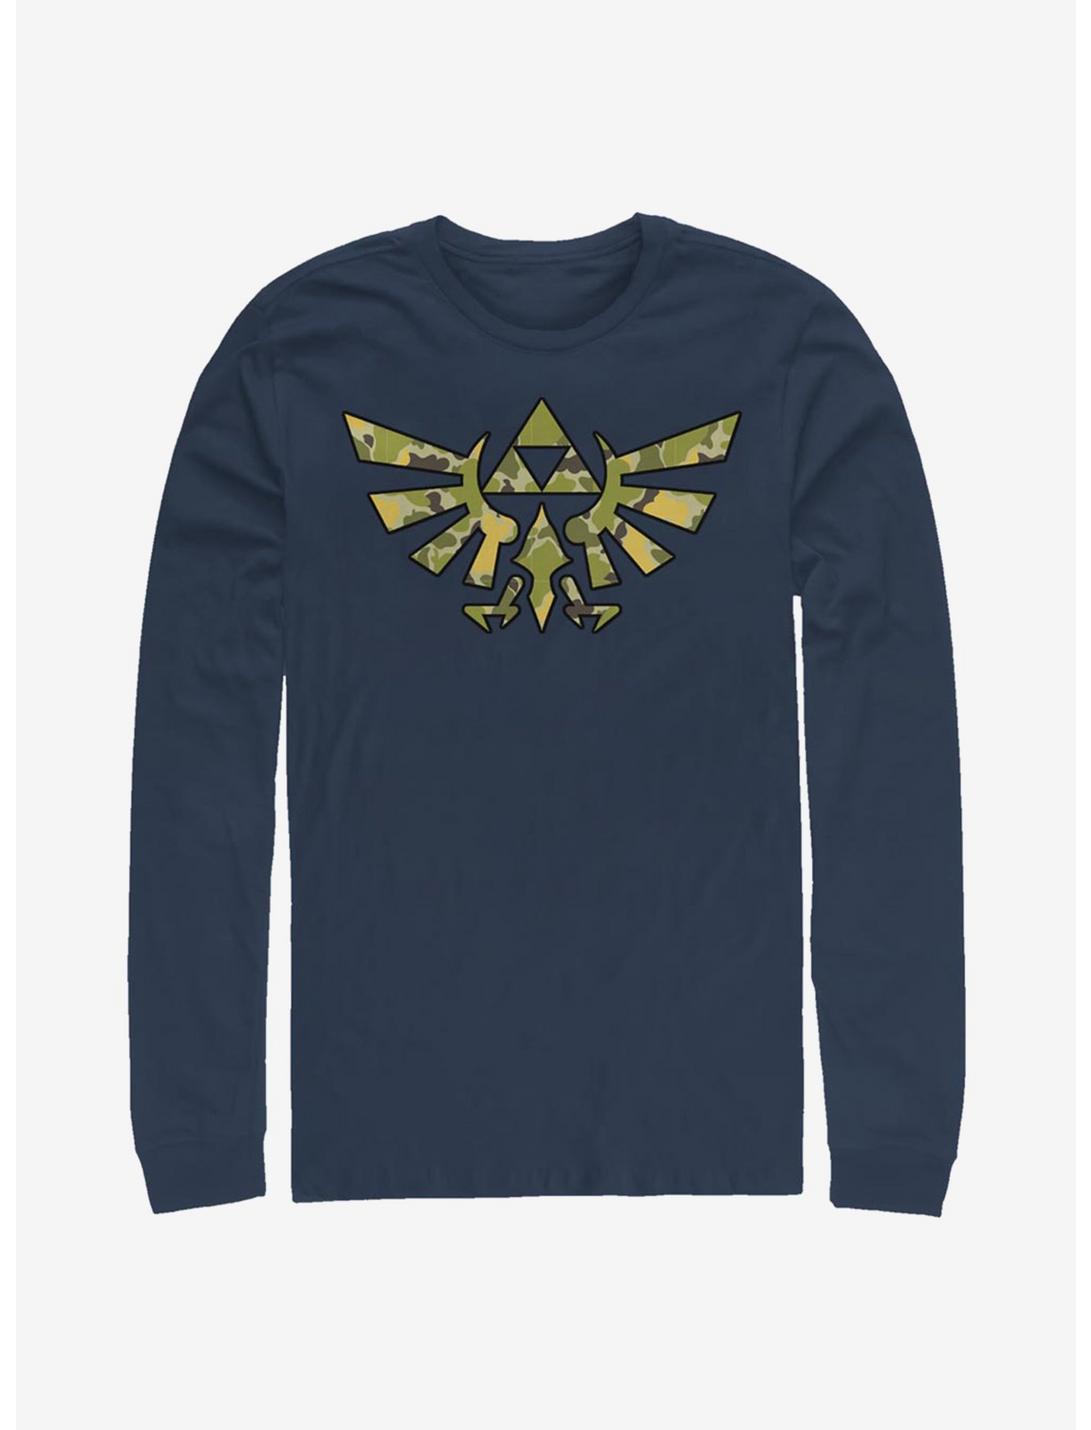 Nintendo The Legend Of Zelda Camo Crest Long-Sleeve T-Shirt, NAVY, hi-res